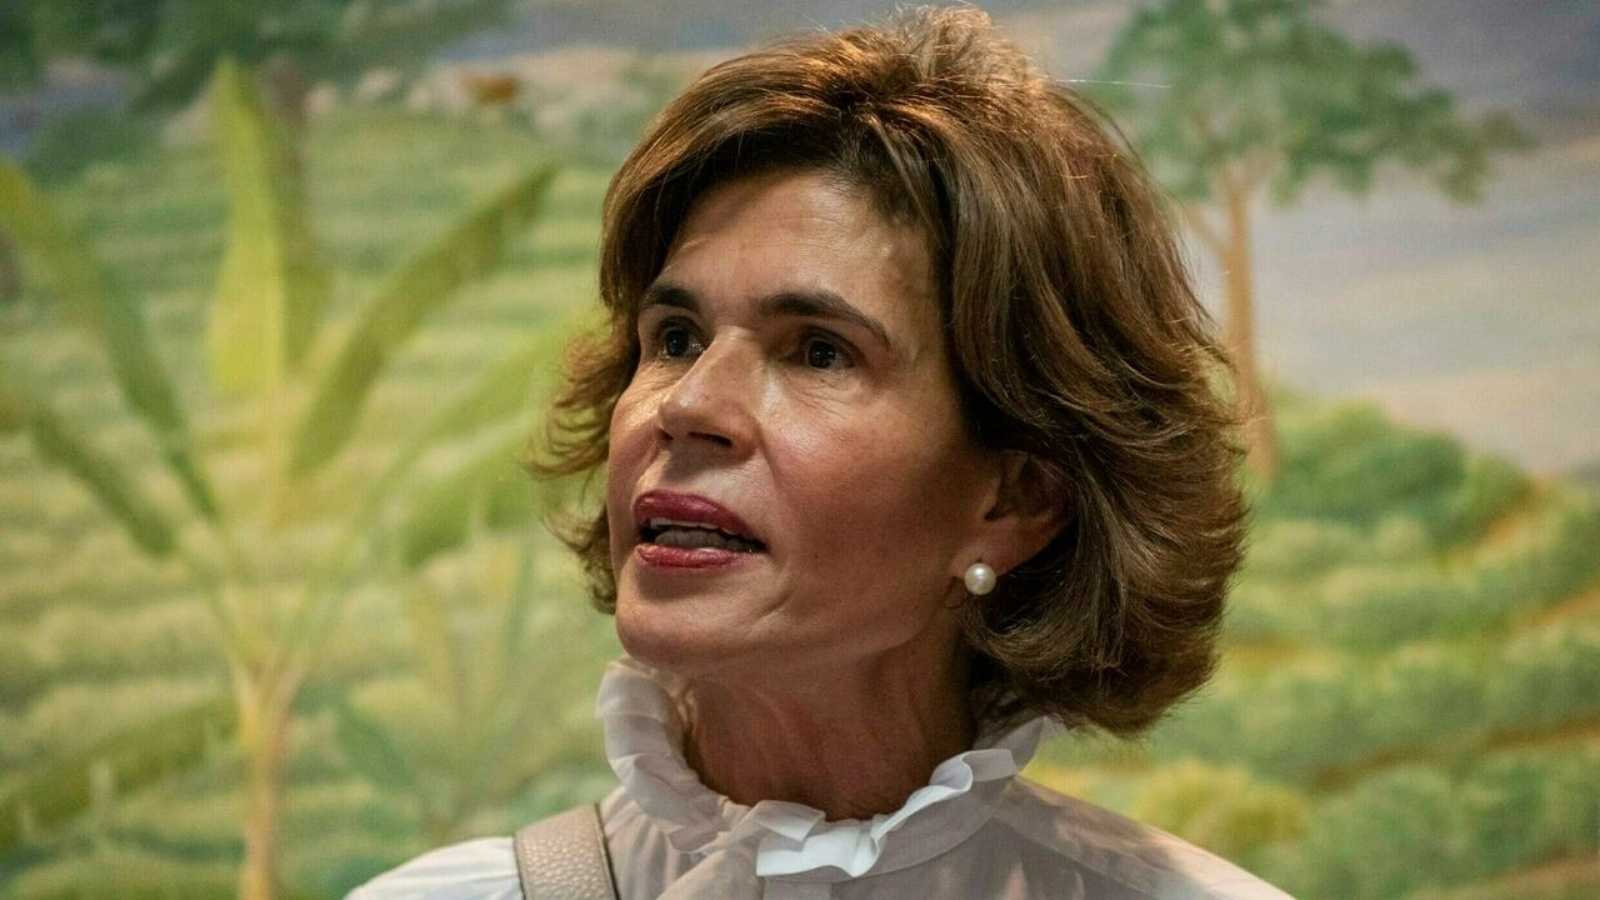 المعارضة كريستيانا تشامورو، التي كانت مرشحة للفوز في الانتخابات الرئاسية في نيكاراغوا في نوفمبر الماضي ضد الرئيس دانيال أورتيغا